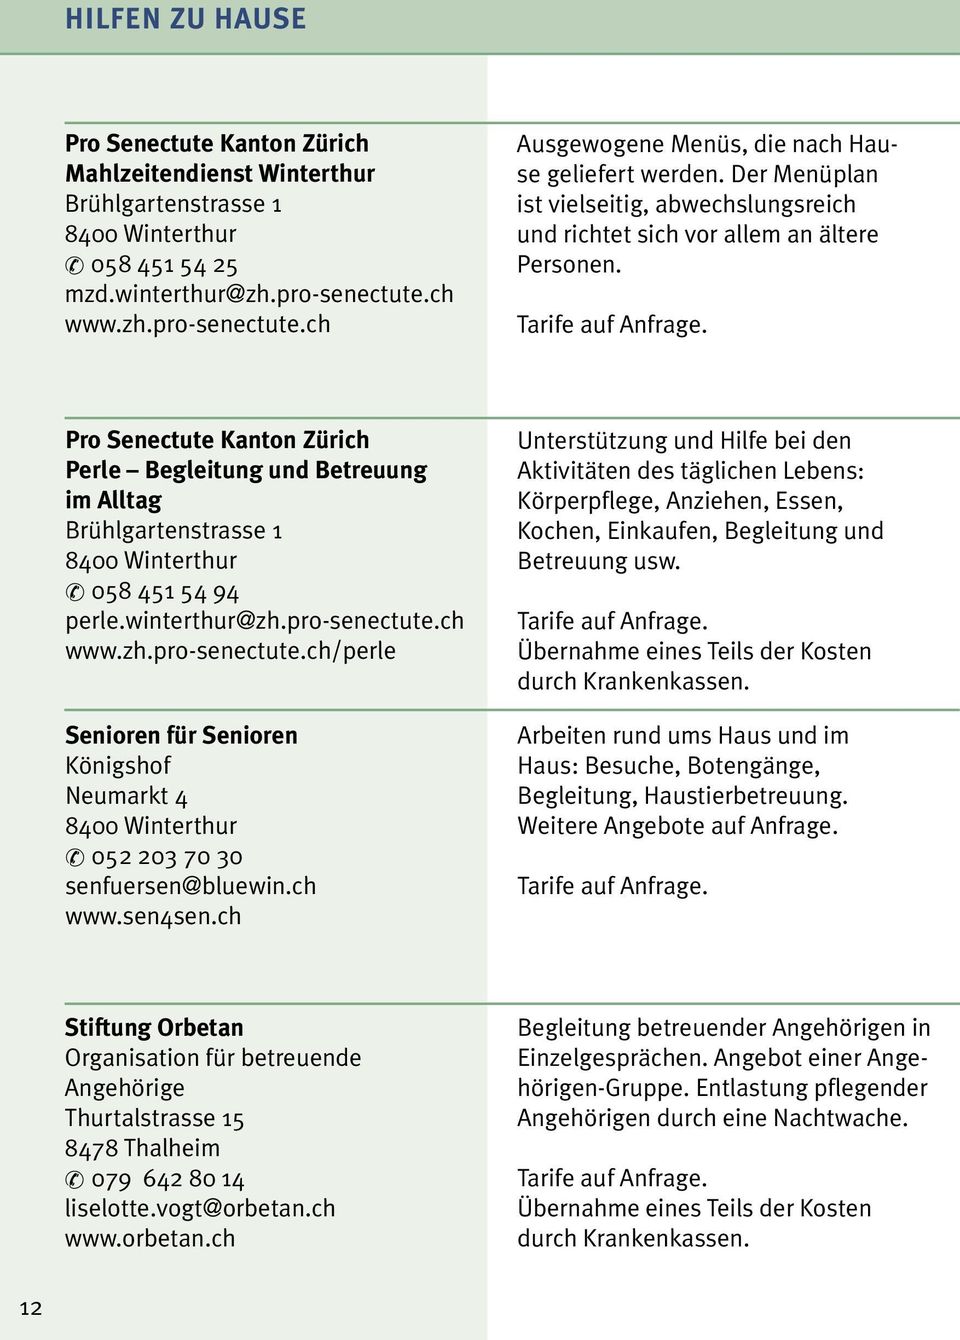 Pro Senectute Kanton Zürich Perle Begleitung und Betreuung im Alltag Brühlgartenstrasse 1 058 451 54 94 perle.winterthur@zh.pro-senectute.